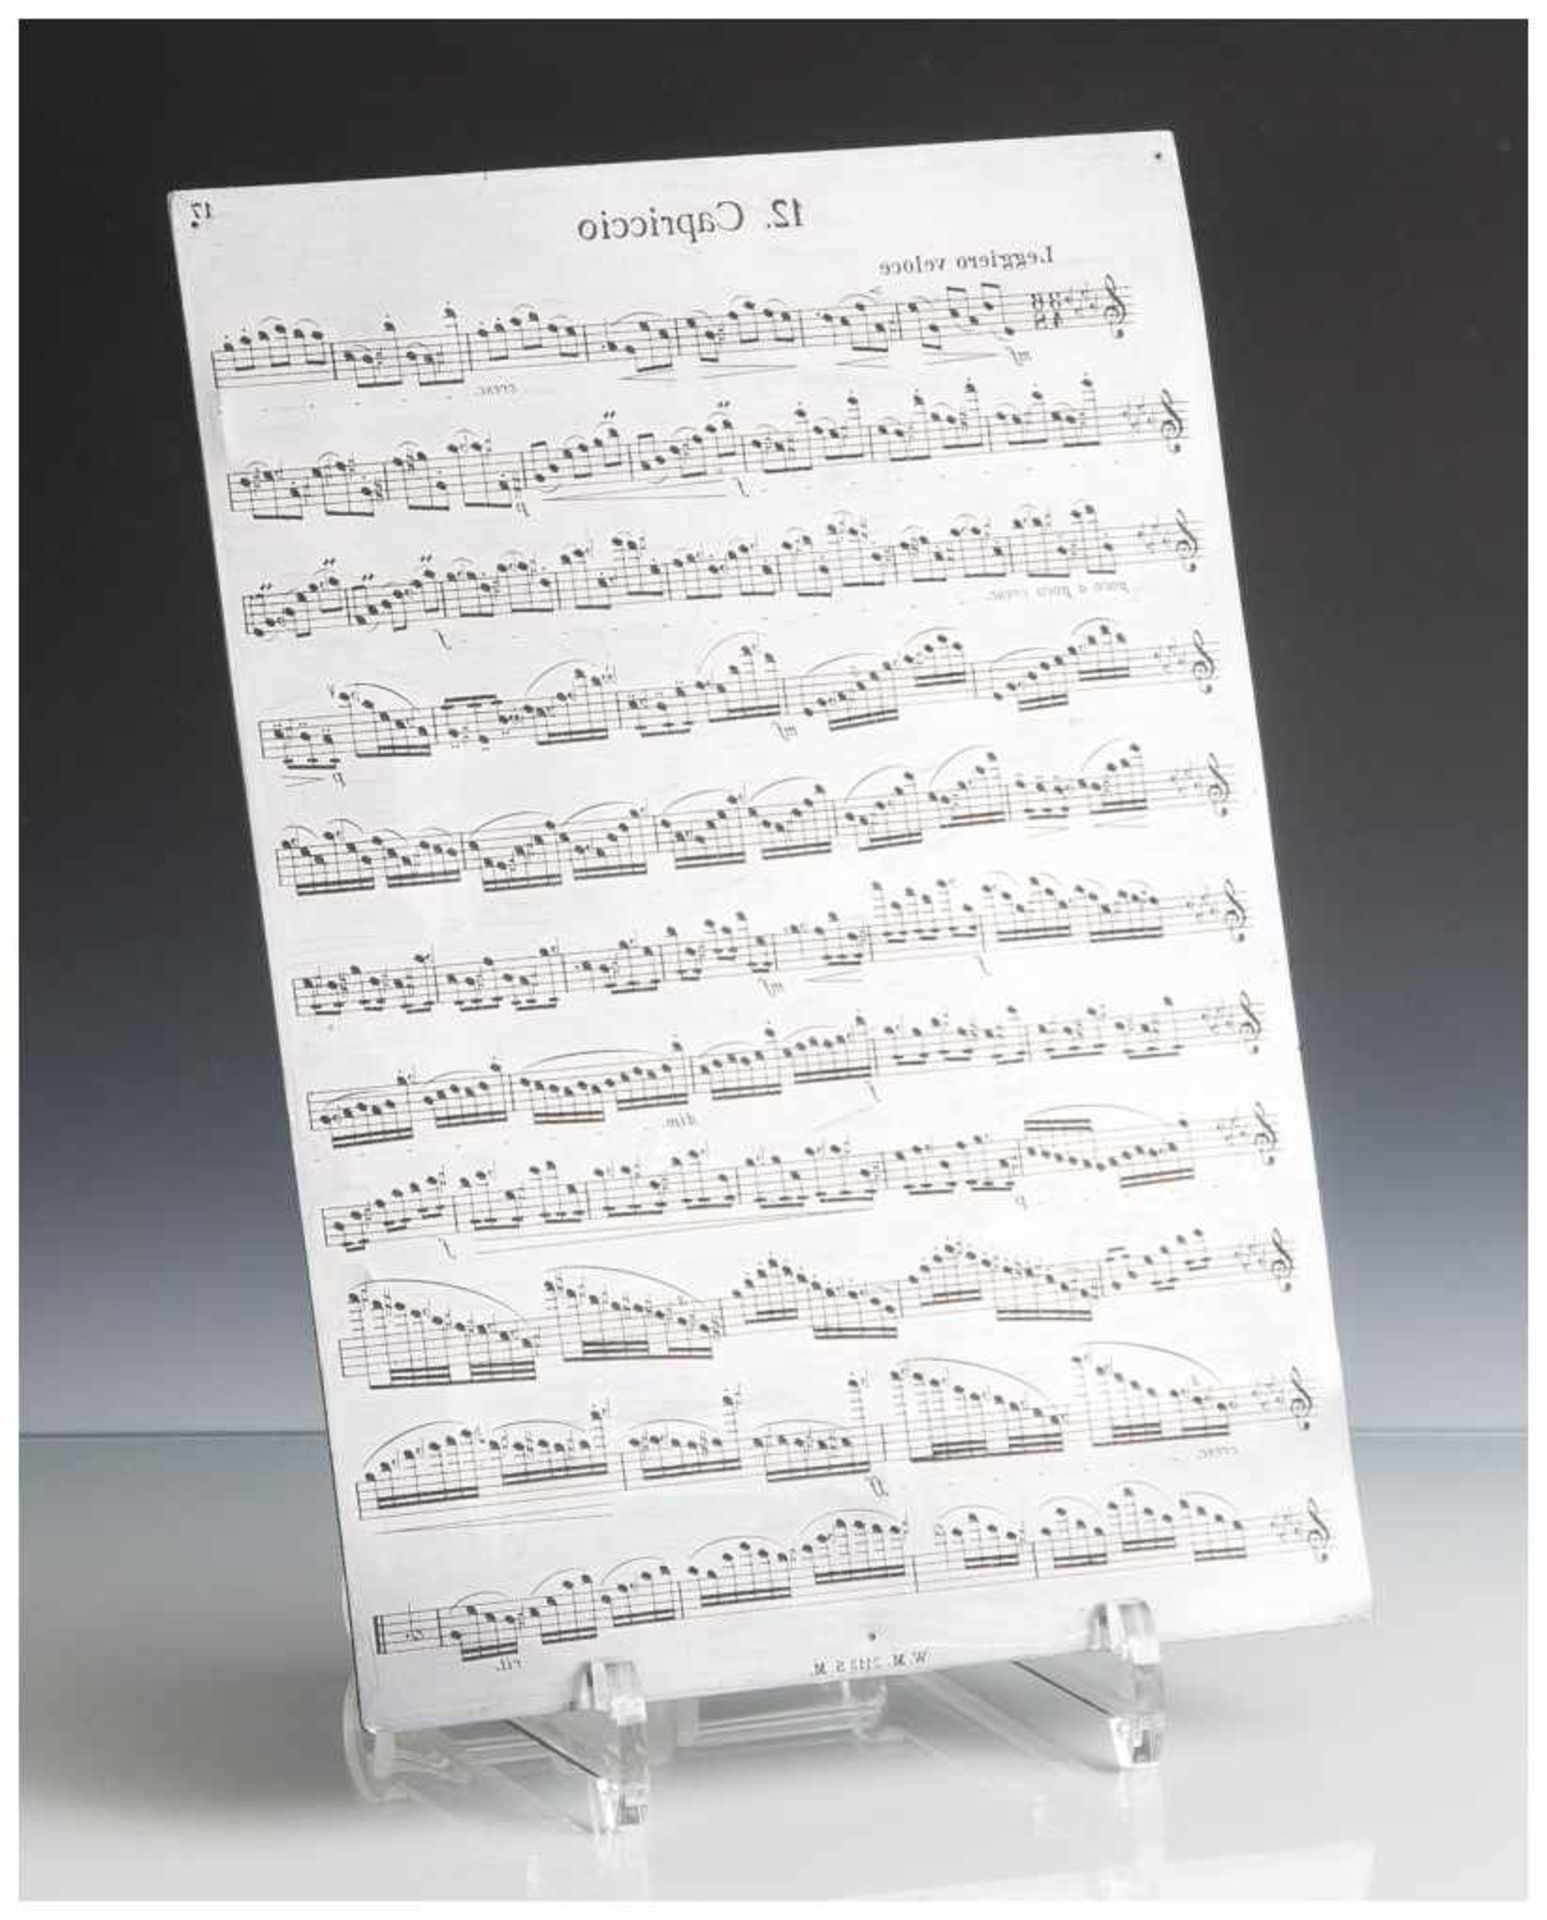 Druckplatte, "12. Capriccio", wohl um 1900, wohl Mozart, unten bez. "W. M. 2113 S. M.". Ca. 28 x